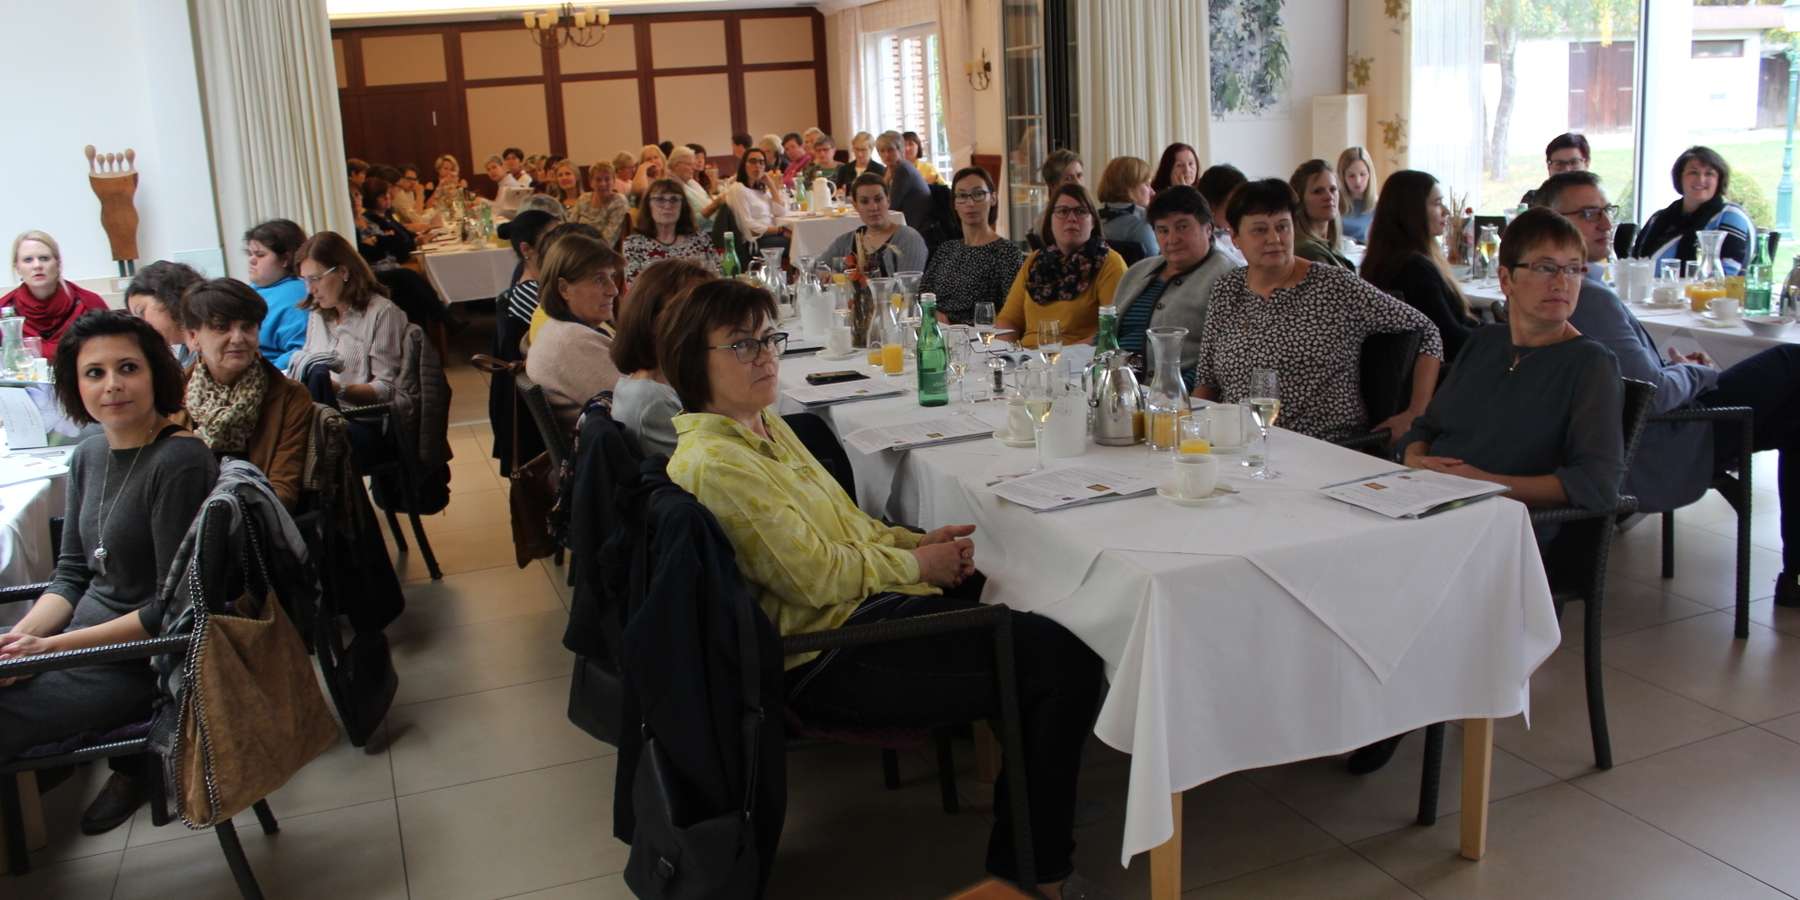 Das gut besuchte Landlady-Frühstück in Gols mit über 70 Teilnehmerinnen © Ulram/Bgld. LK